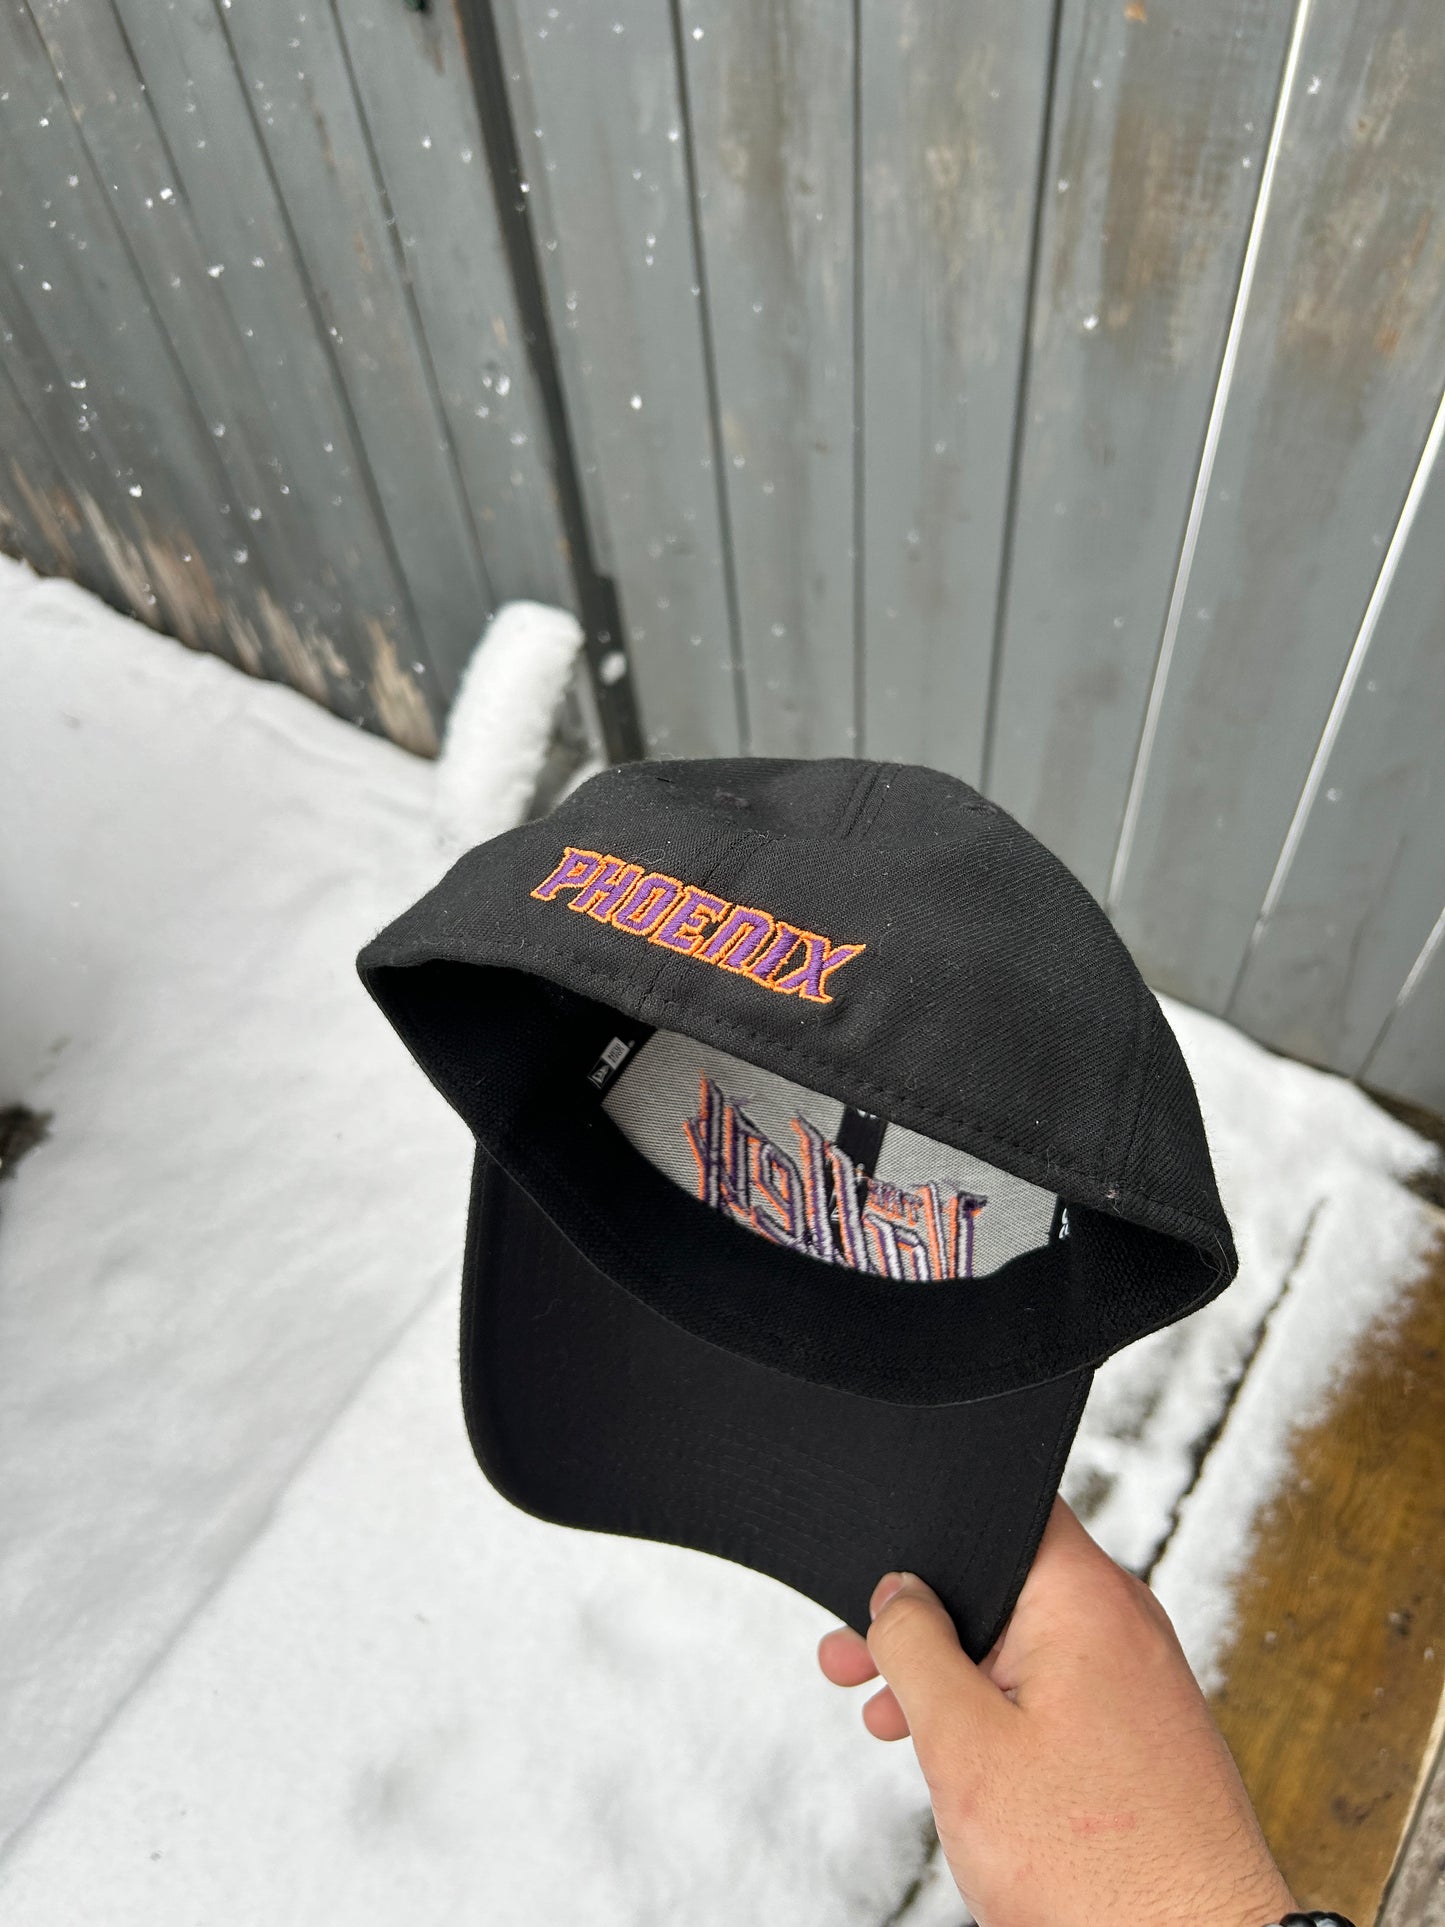 Phoenix Suns “The Valley” Flex Fit Hat (M/L)